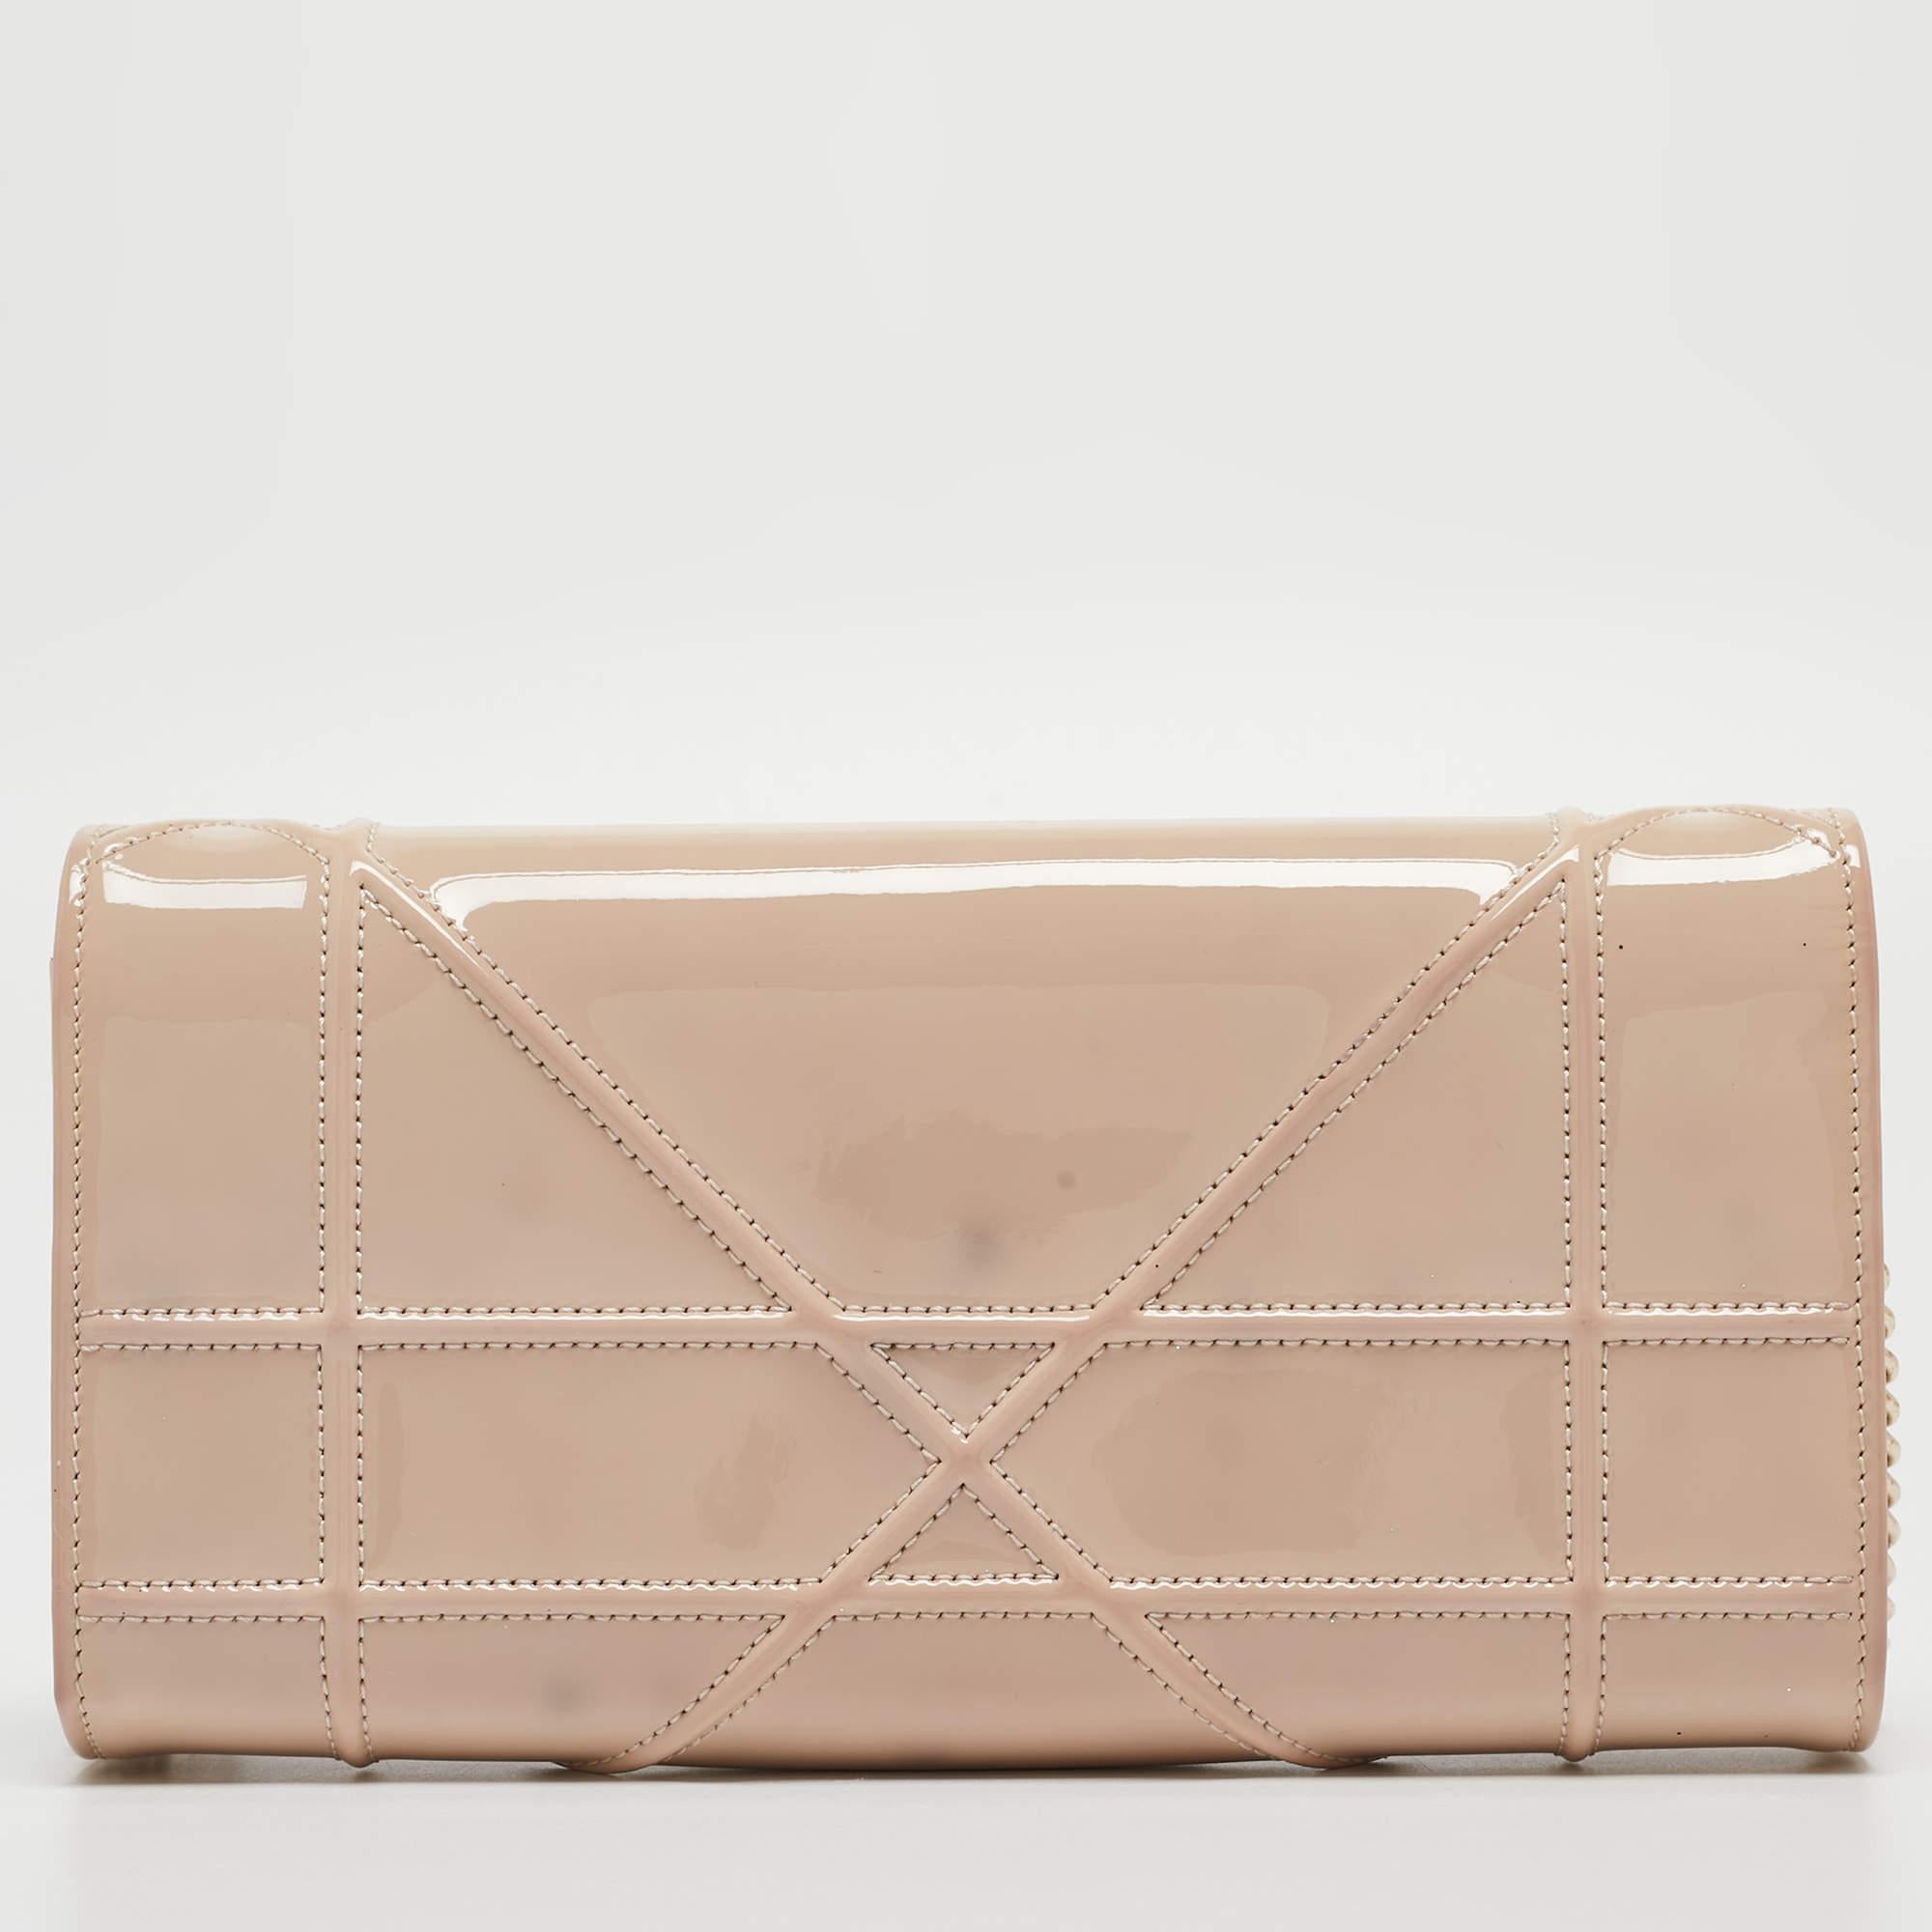 Le sac Dior Diorama WOC est léger, durable et confortable à porter. Il est magnifiquement fabriqué à l'aide des meilleurs matériaux pour être un allié de style durable.

Comprend : Sac à poussière d'origine, boîte d'origine

